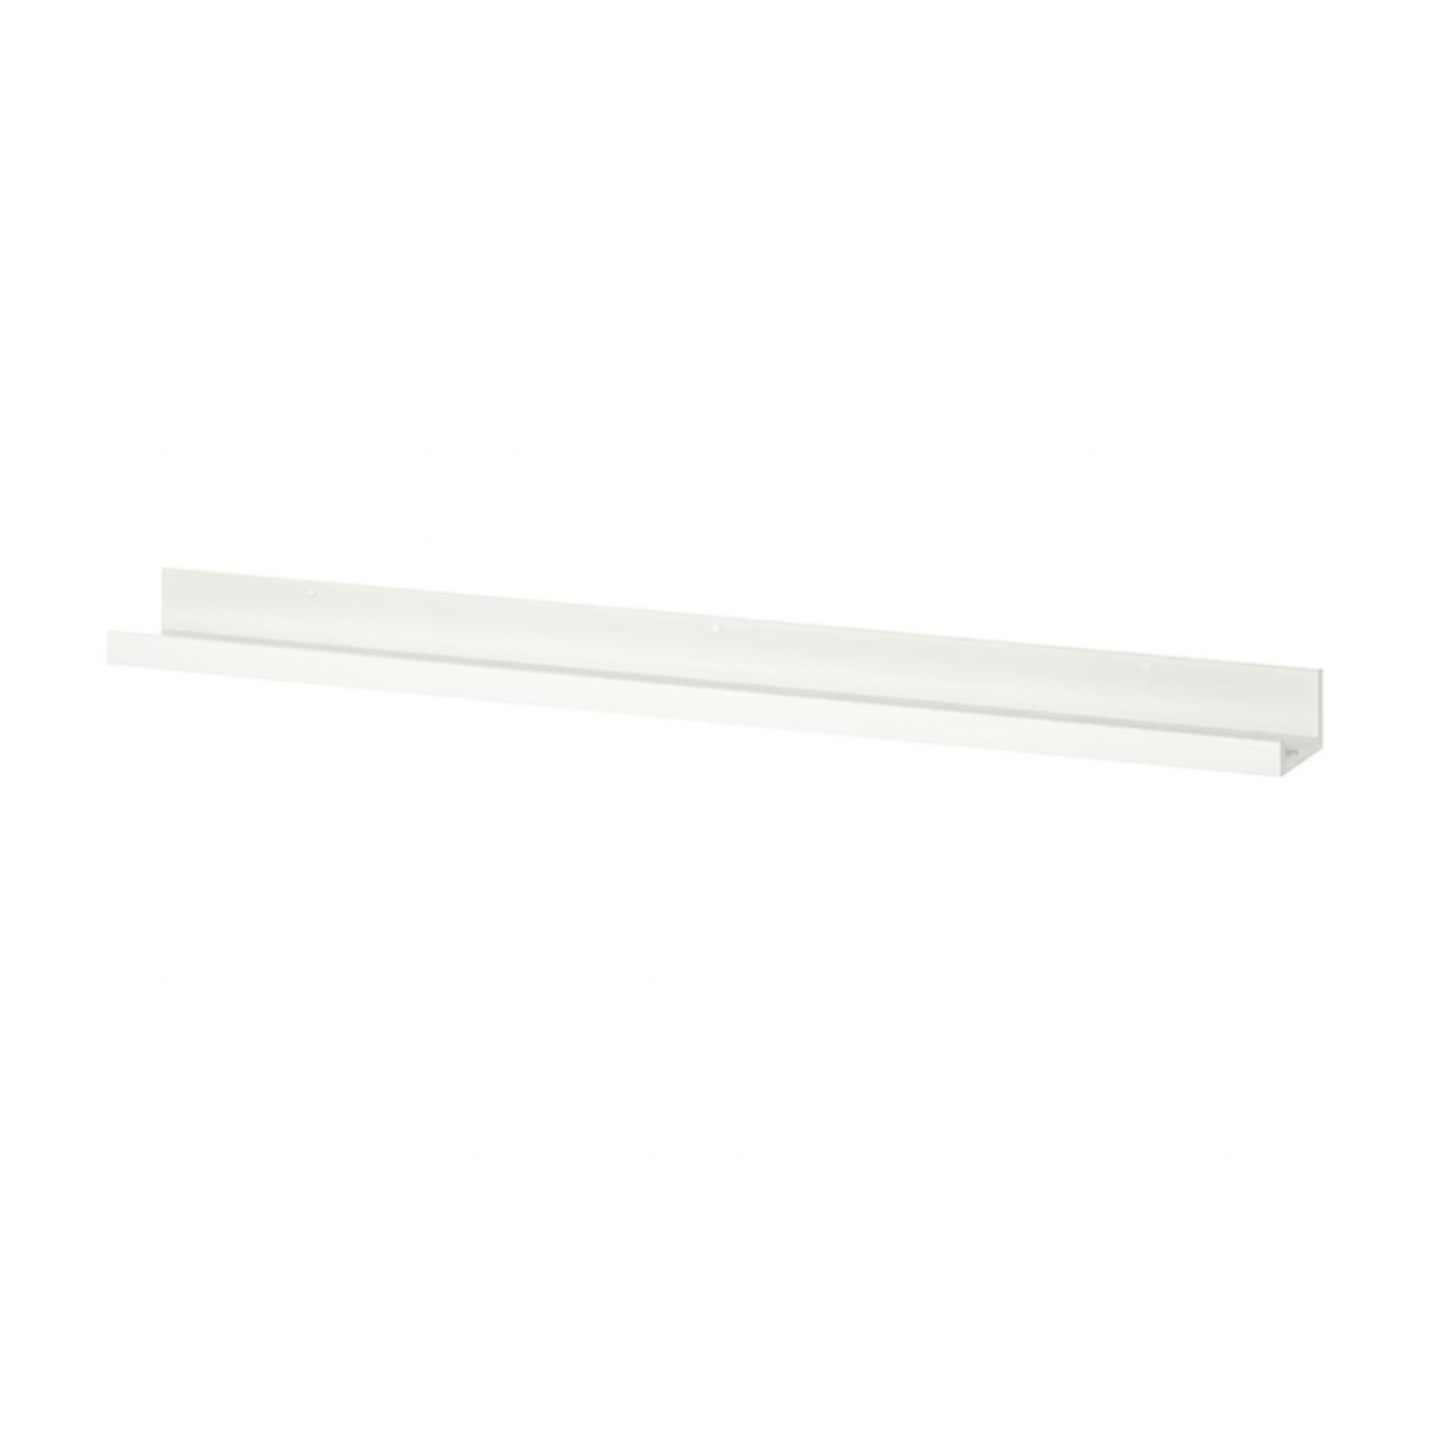 Ikea Mosslanda Picture Ledge, 115cm, White (4389201903681)